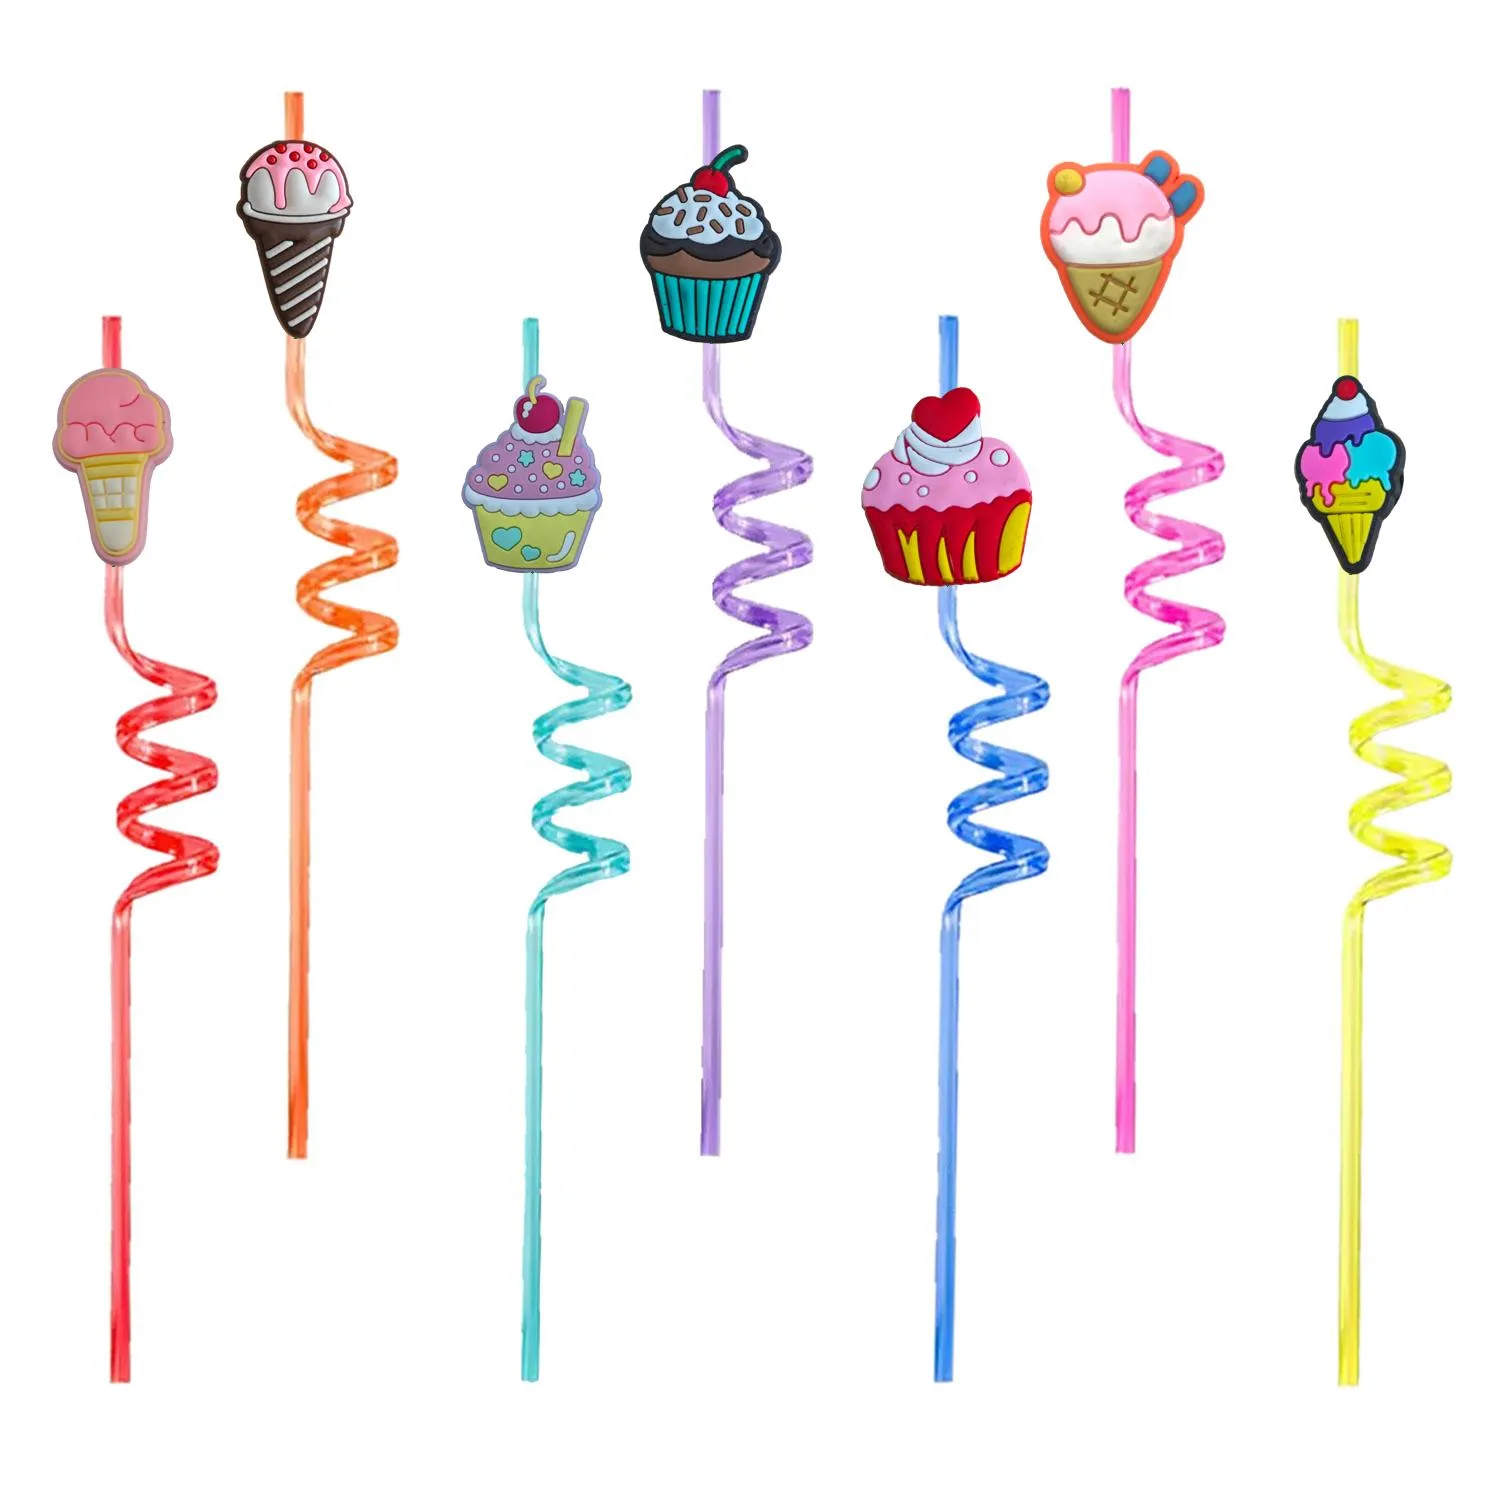 使い捨てのアイスクリームのテーマをテーマにしたクレイジーな漫画stsプラスチックセントガールズパーティーの装飾子供のための飲酒誕生日用品fa otdso